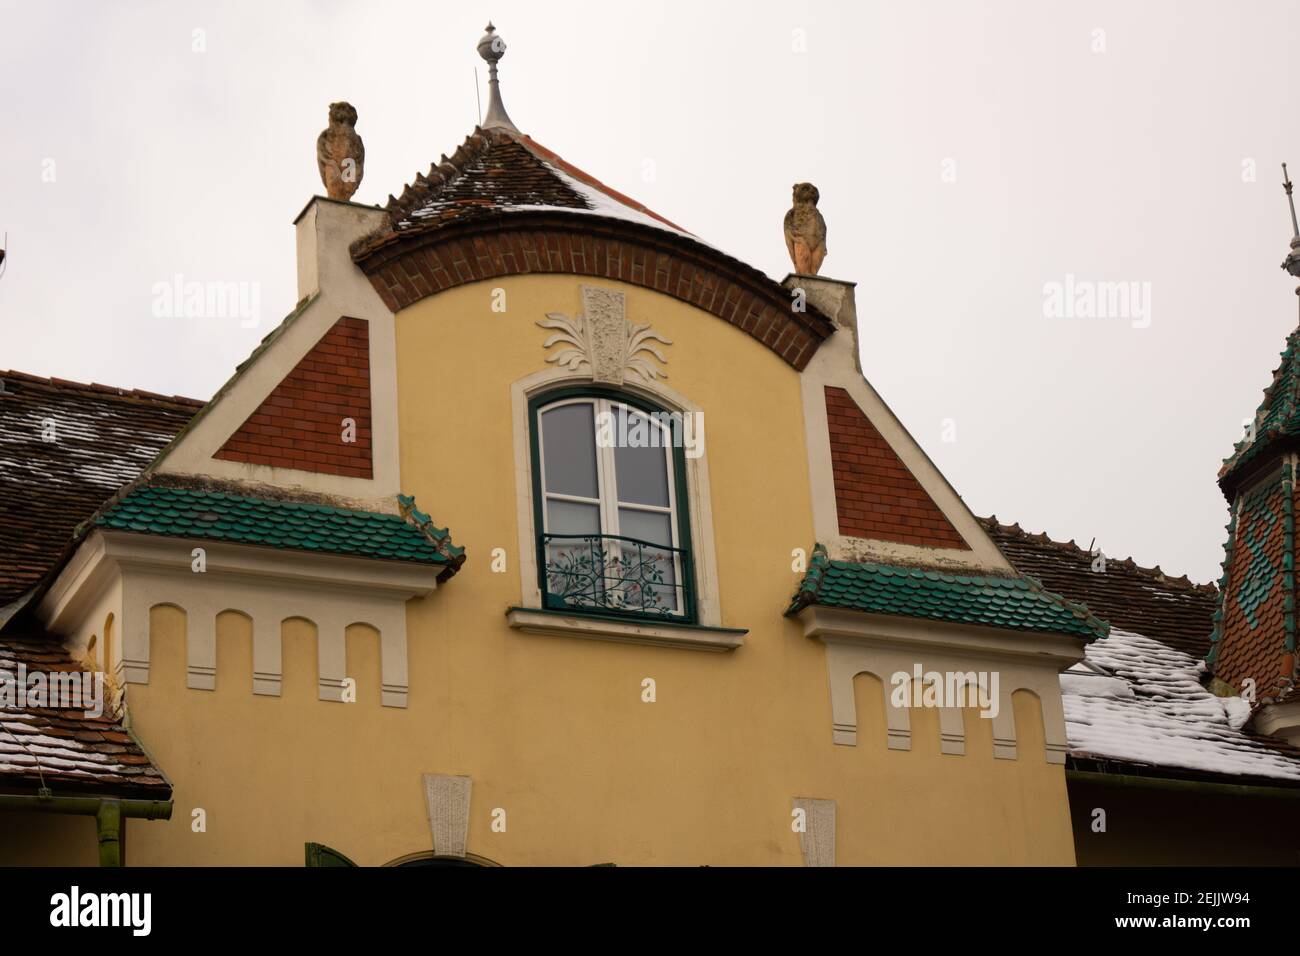 Alte Dachgaube in altertümlichem Stil mit sehr schönen Verzierungen Stock Photo